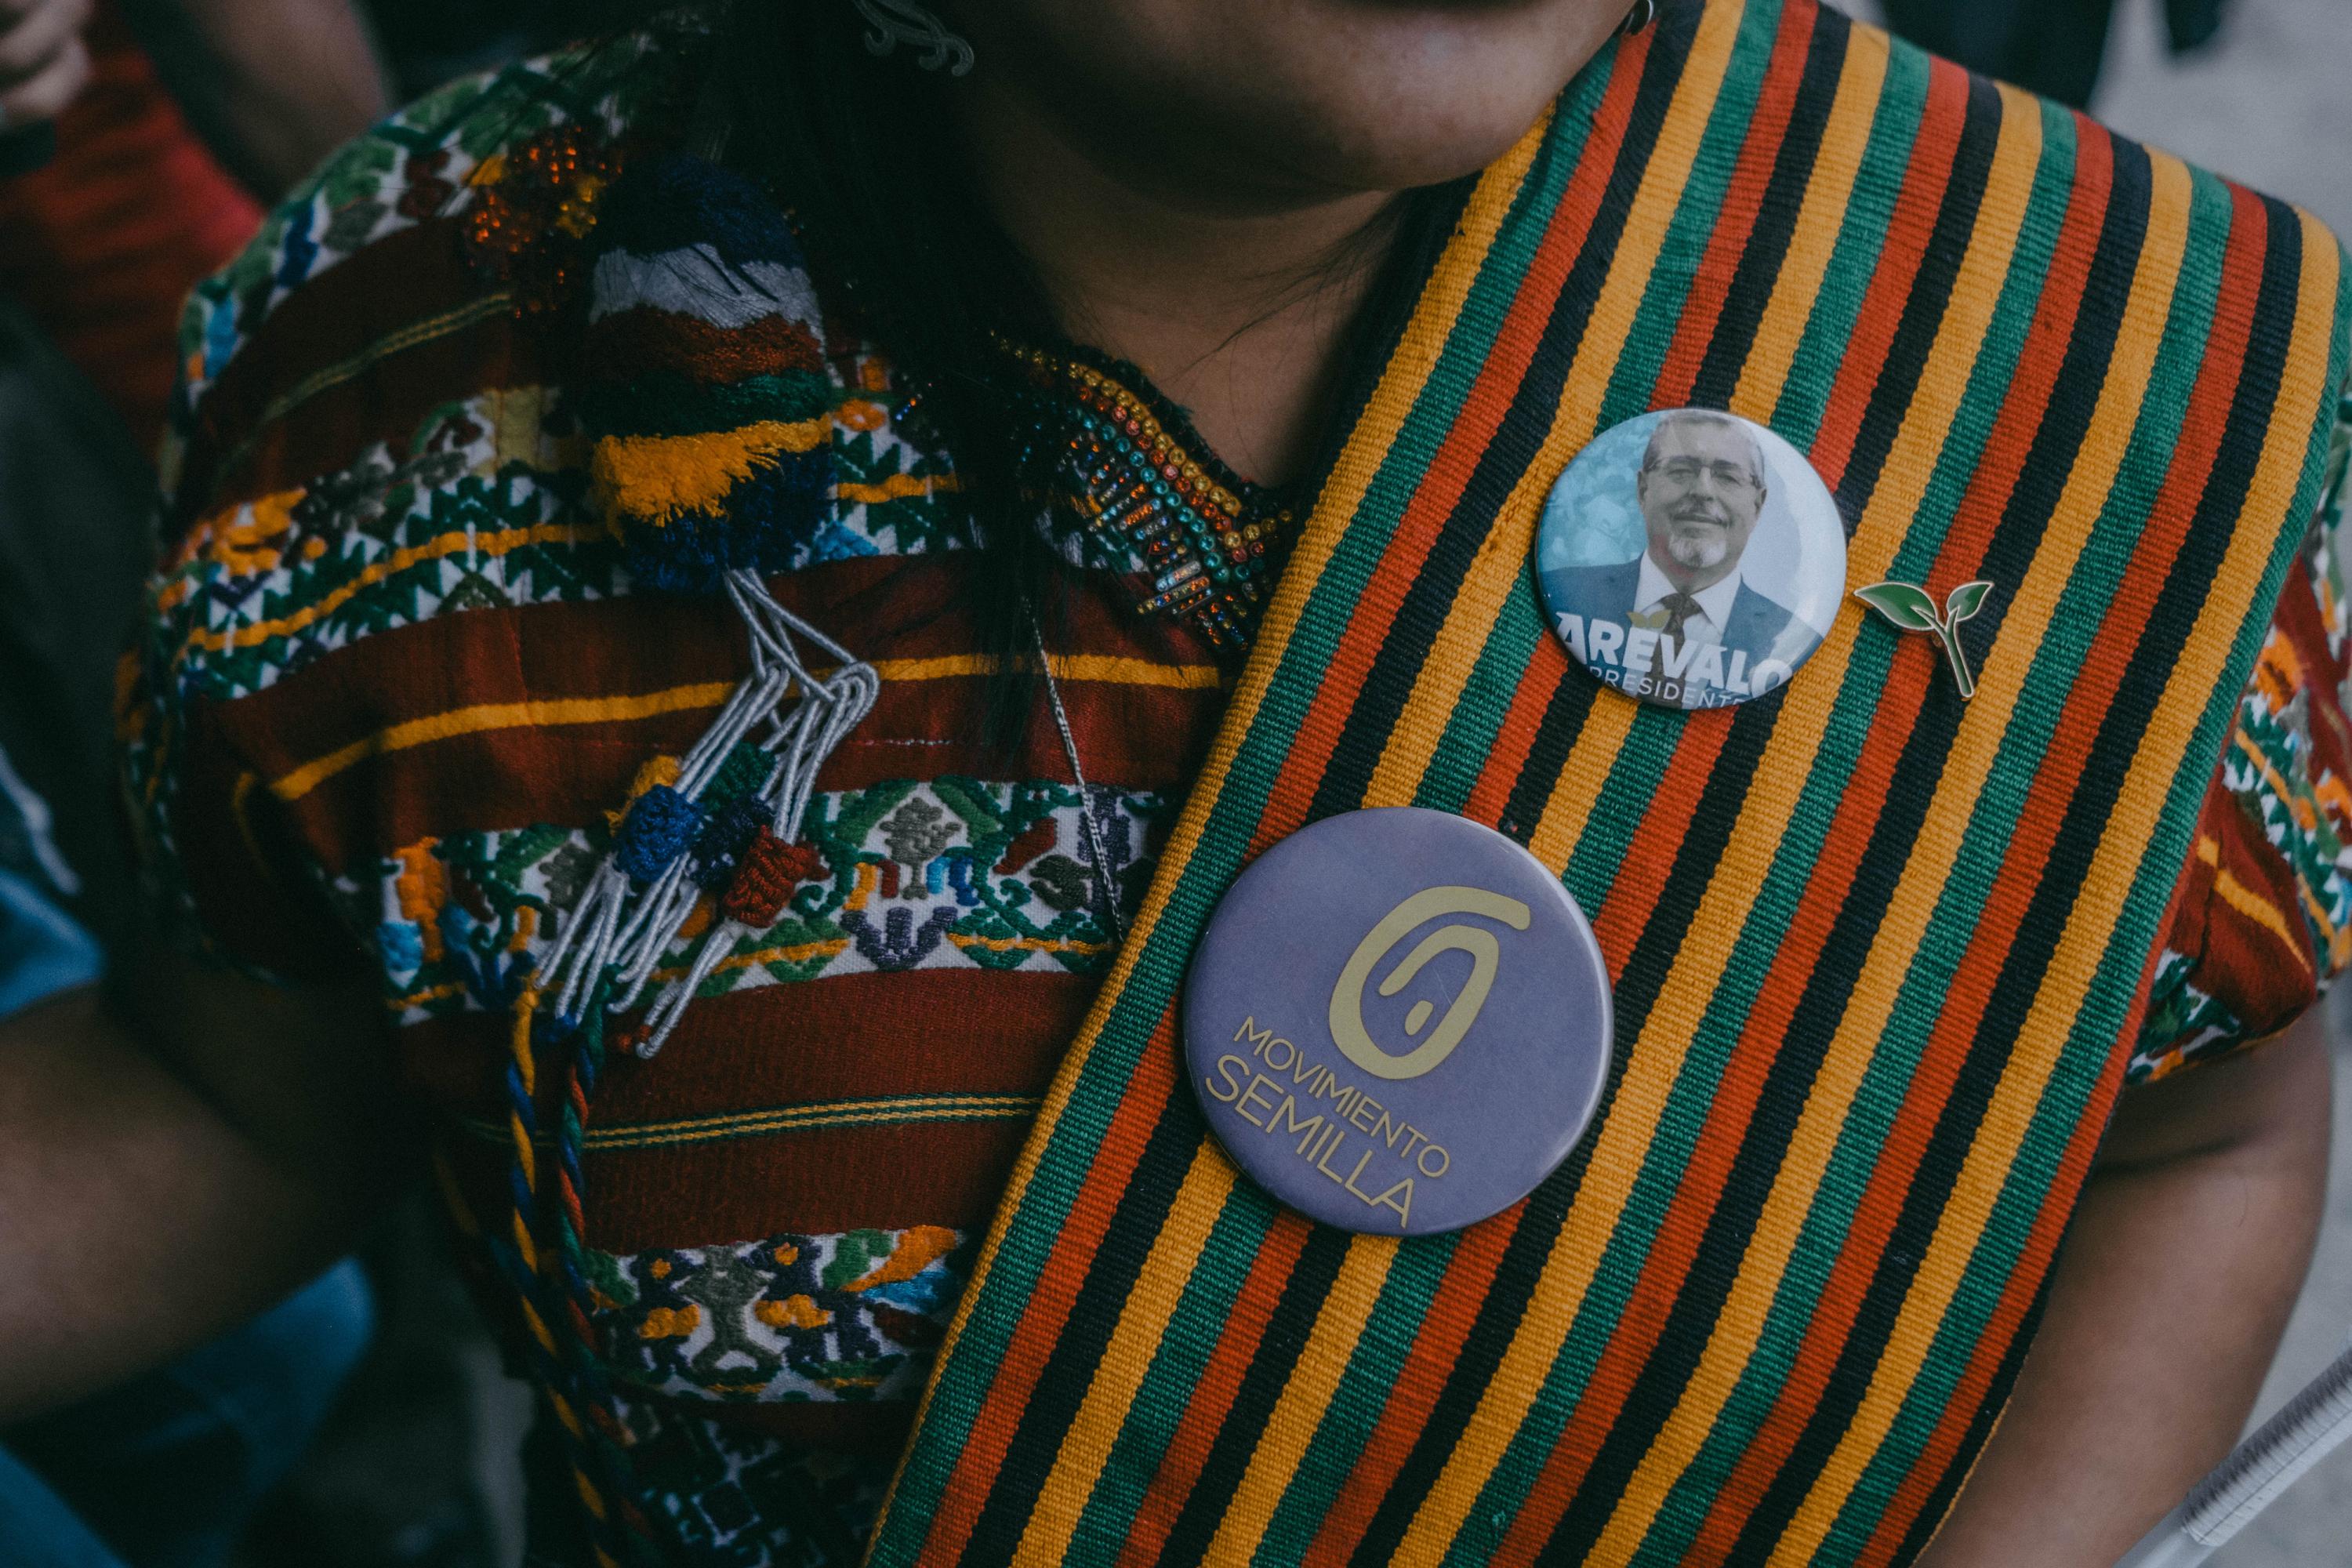 Parte de la campaña de Semilla descansó en su defensa de los derechos “los cuatro pueblos” (maya, xinka, garífuna y ladino) que habitan Guatemala y la necesidad de combatir el racismo y la exclusión. La cuestionada expulsión de la carrera presidencial de la candidata del Movimiento de la Liberación de los Pueblos (MLP), Thelma Cabrera, por parte del TSE, hizo que gran parte del voto indígena organizado apoyara a Arévalo.